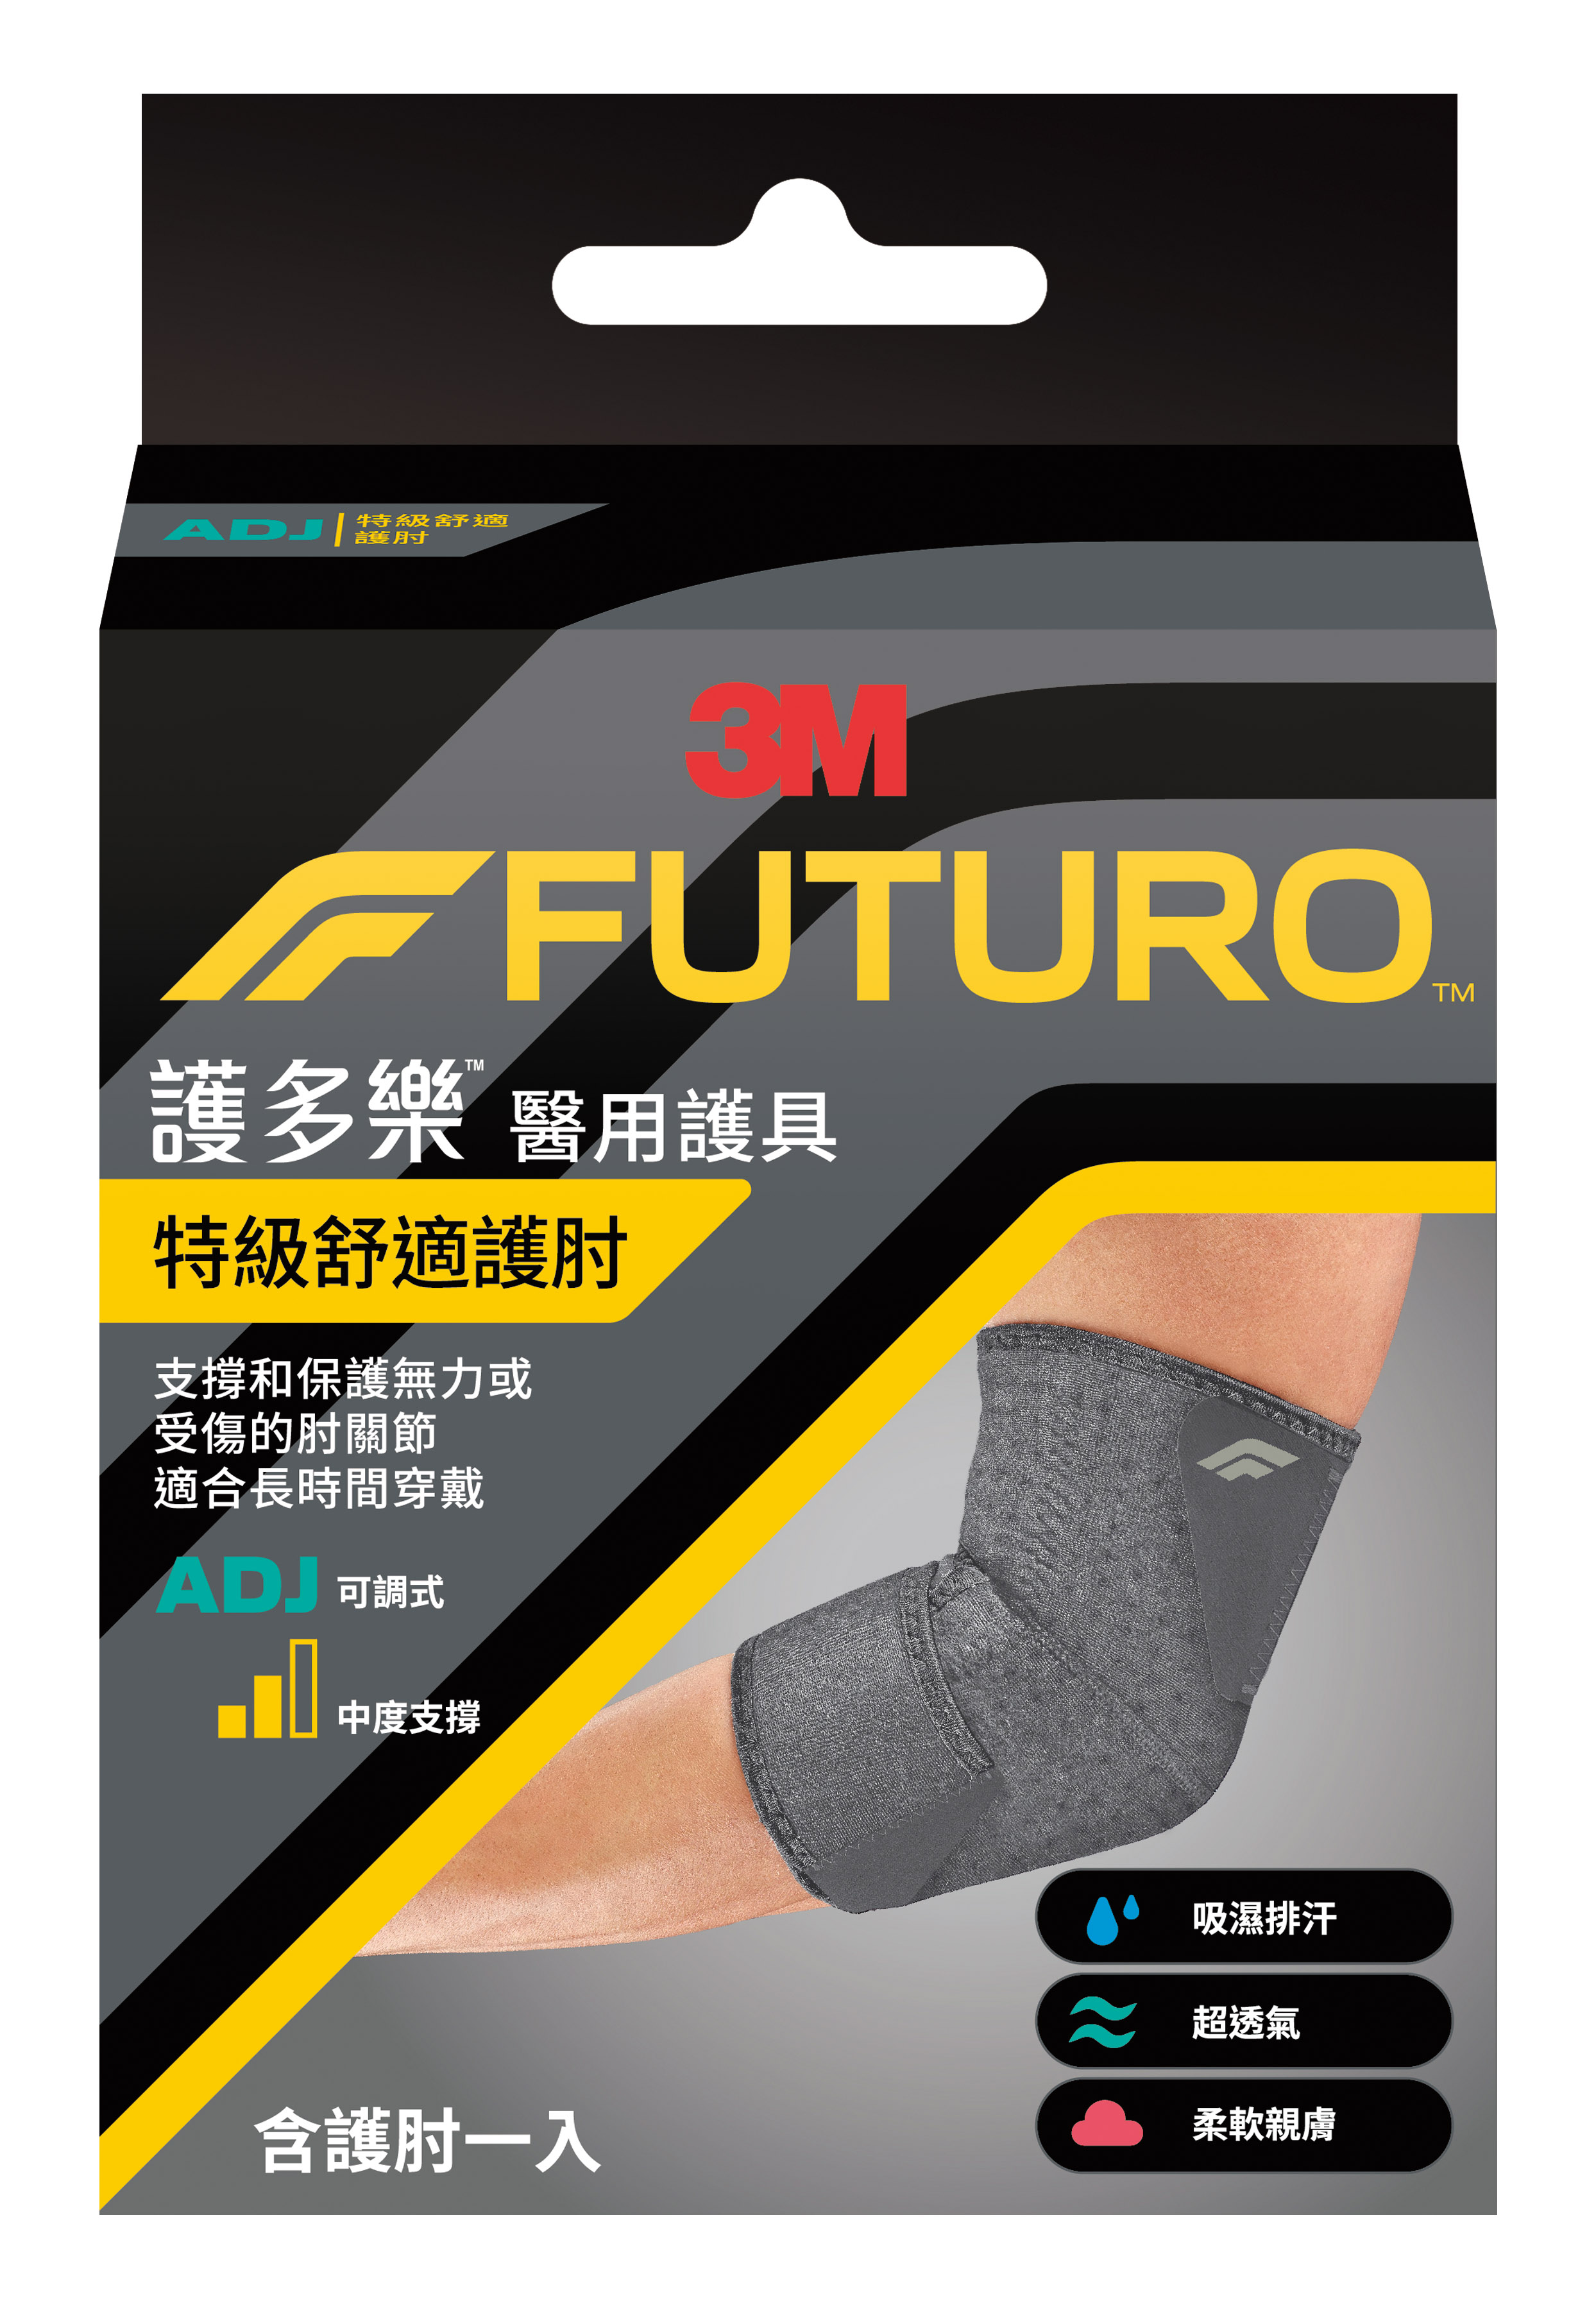 【醫護寶】3M-FUTURO 護多樂 特級舒適護肘 適合長時間穿戴 醫用護具